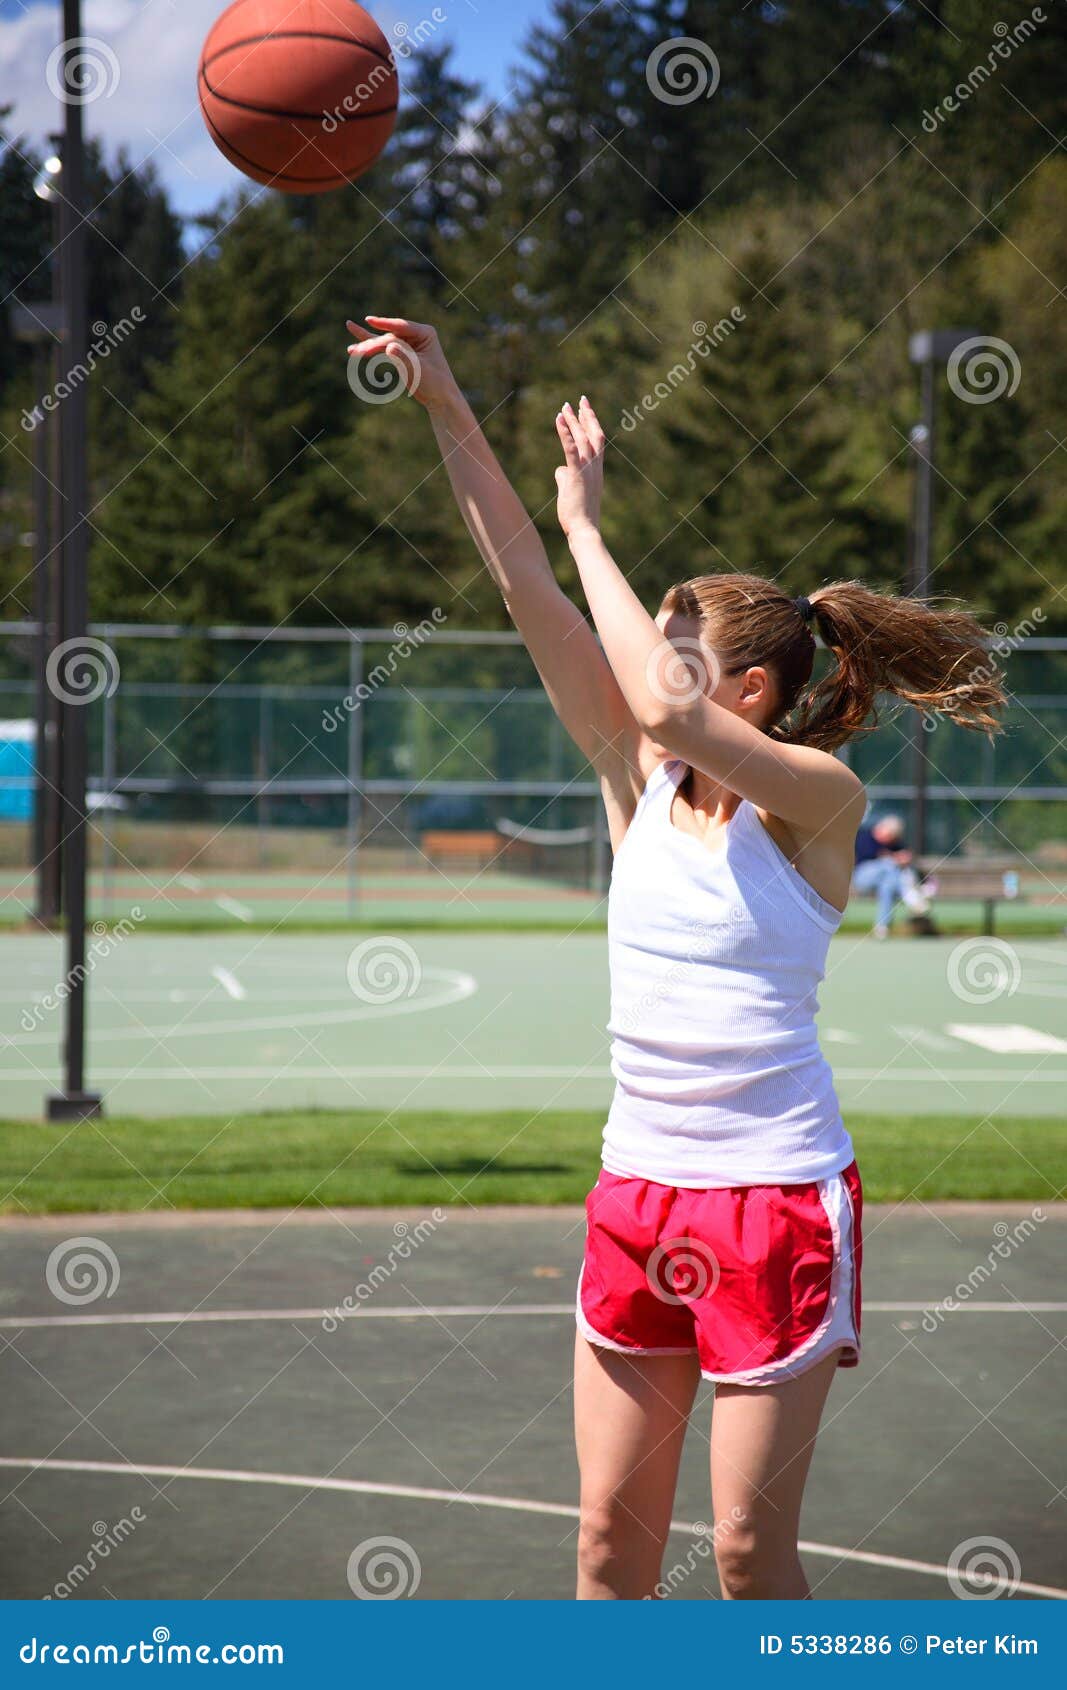 Woman Shooting Basketball Royalty Free Stock Image - Image: 5338286